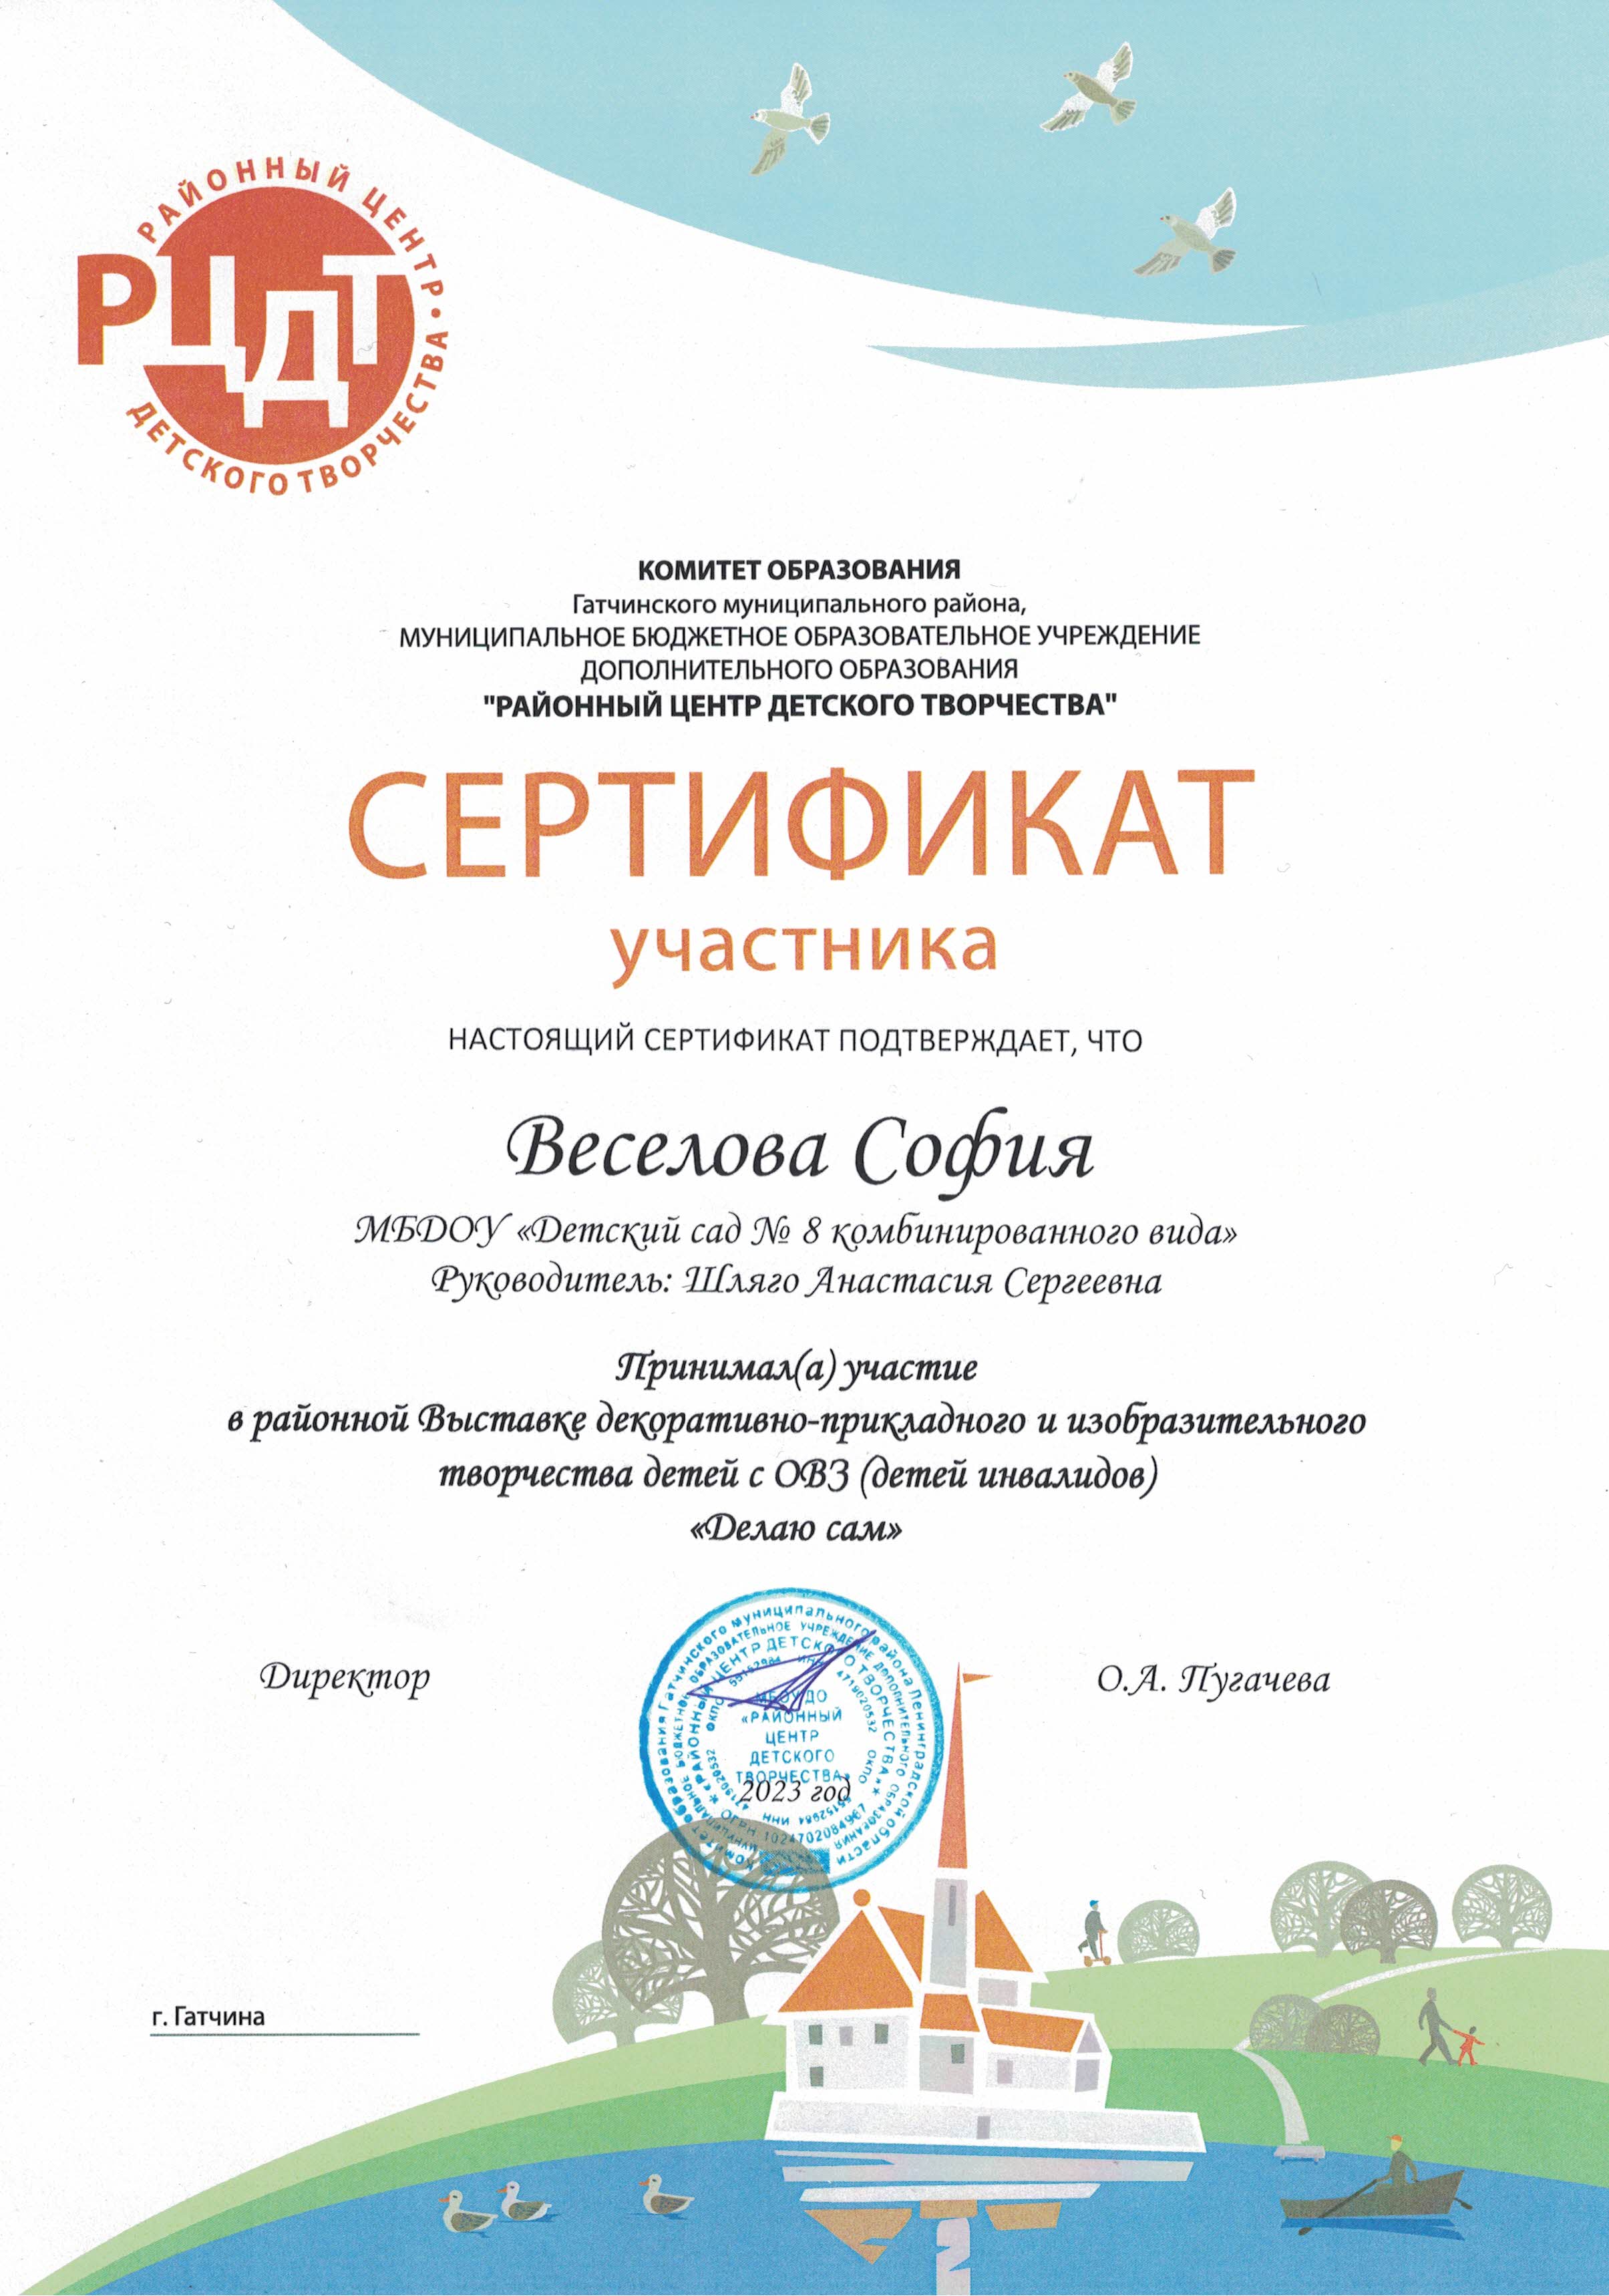 Сертификат участника Веселовой Софии из группы "Солнышко"